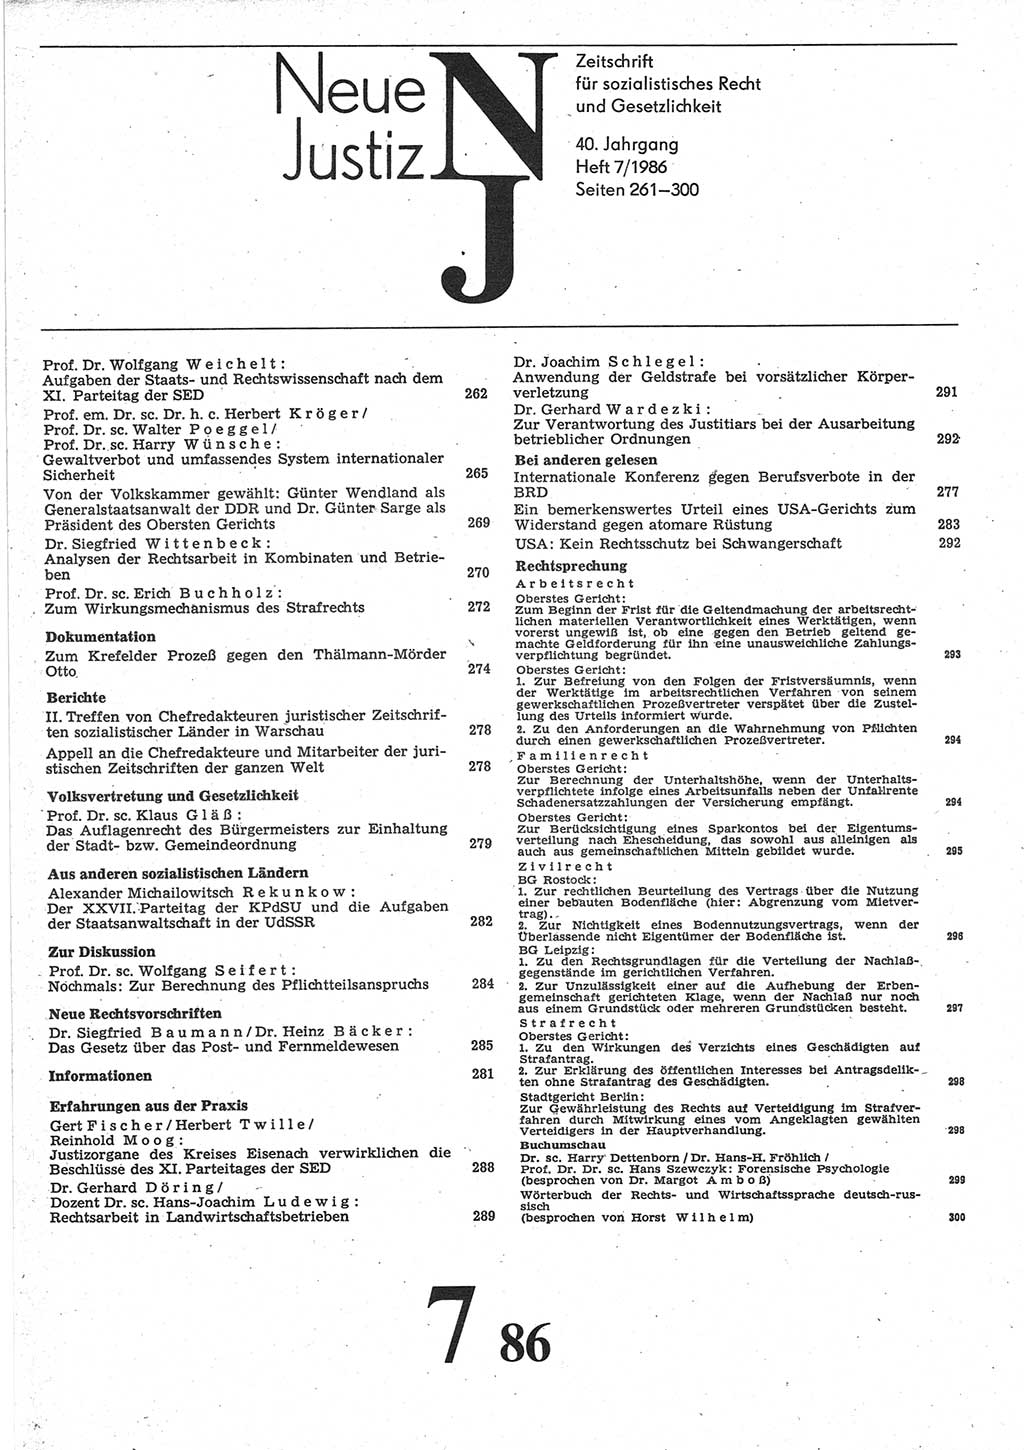 Neue Justiz (NJ), Zeitschrift für sozialistisches Recht und Gesetzlichkeit [Deutsche Demokratische Republik (DDR)], 40. Jahrgang 1986, Seite 261 (NJ DDR 1986, S. 261)